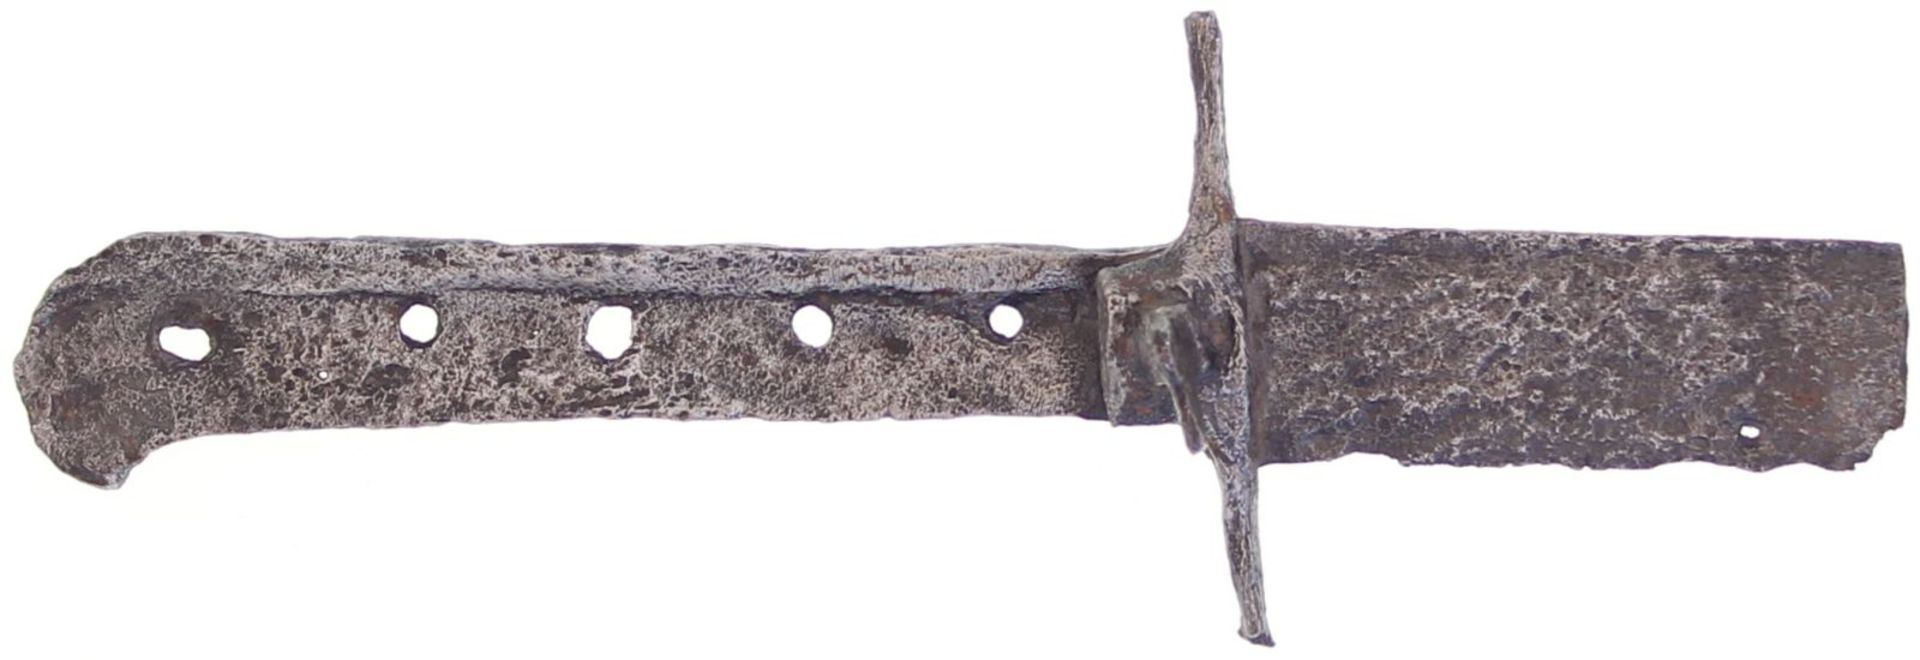 Gefässfragment eines grossen Messers, deutsch 1. Viertel 16. Jh. Boden- oder Wasserfand Länge 29.